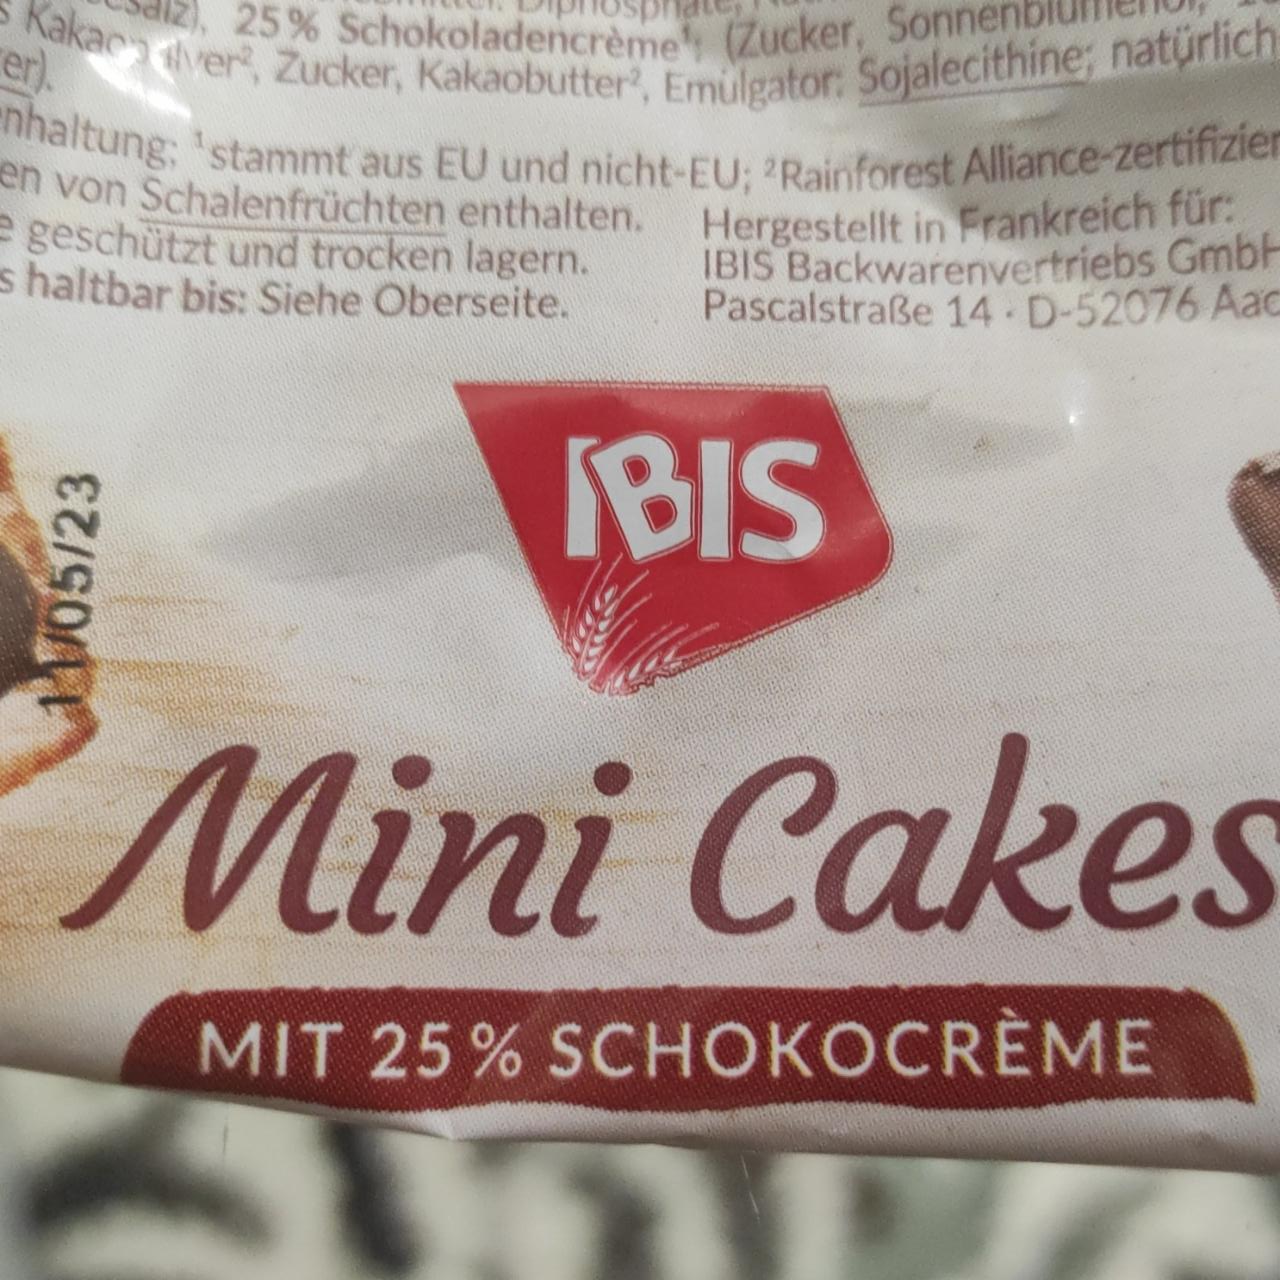 Fotografie - Mini cakes mit 25% schokocreme Ibis